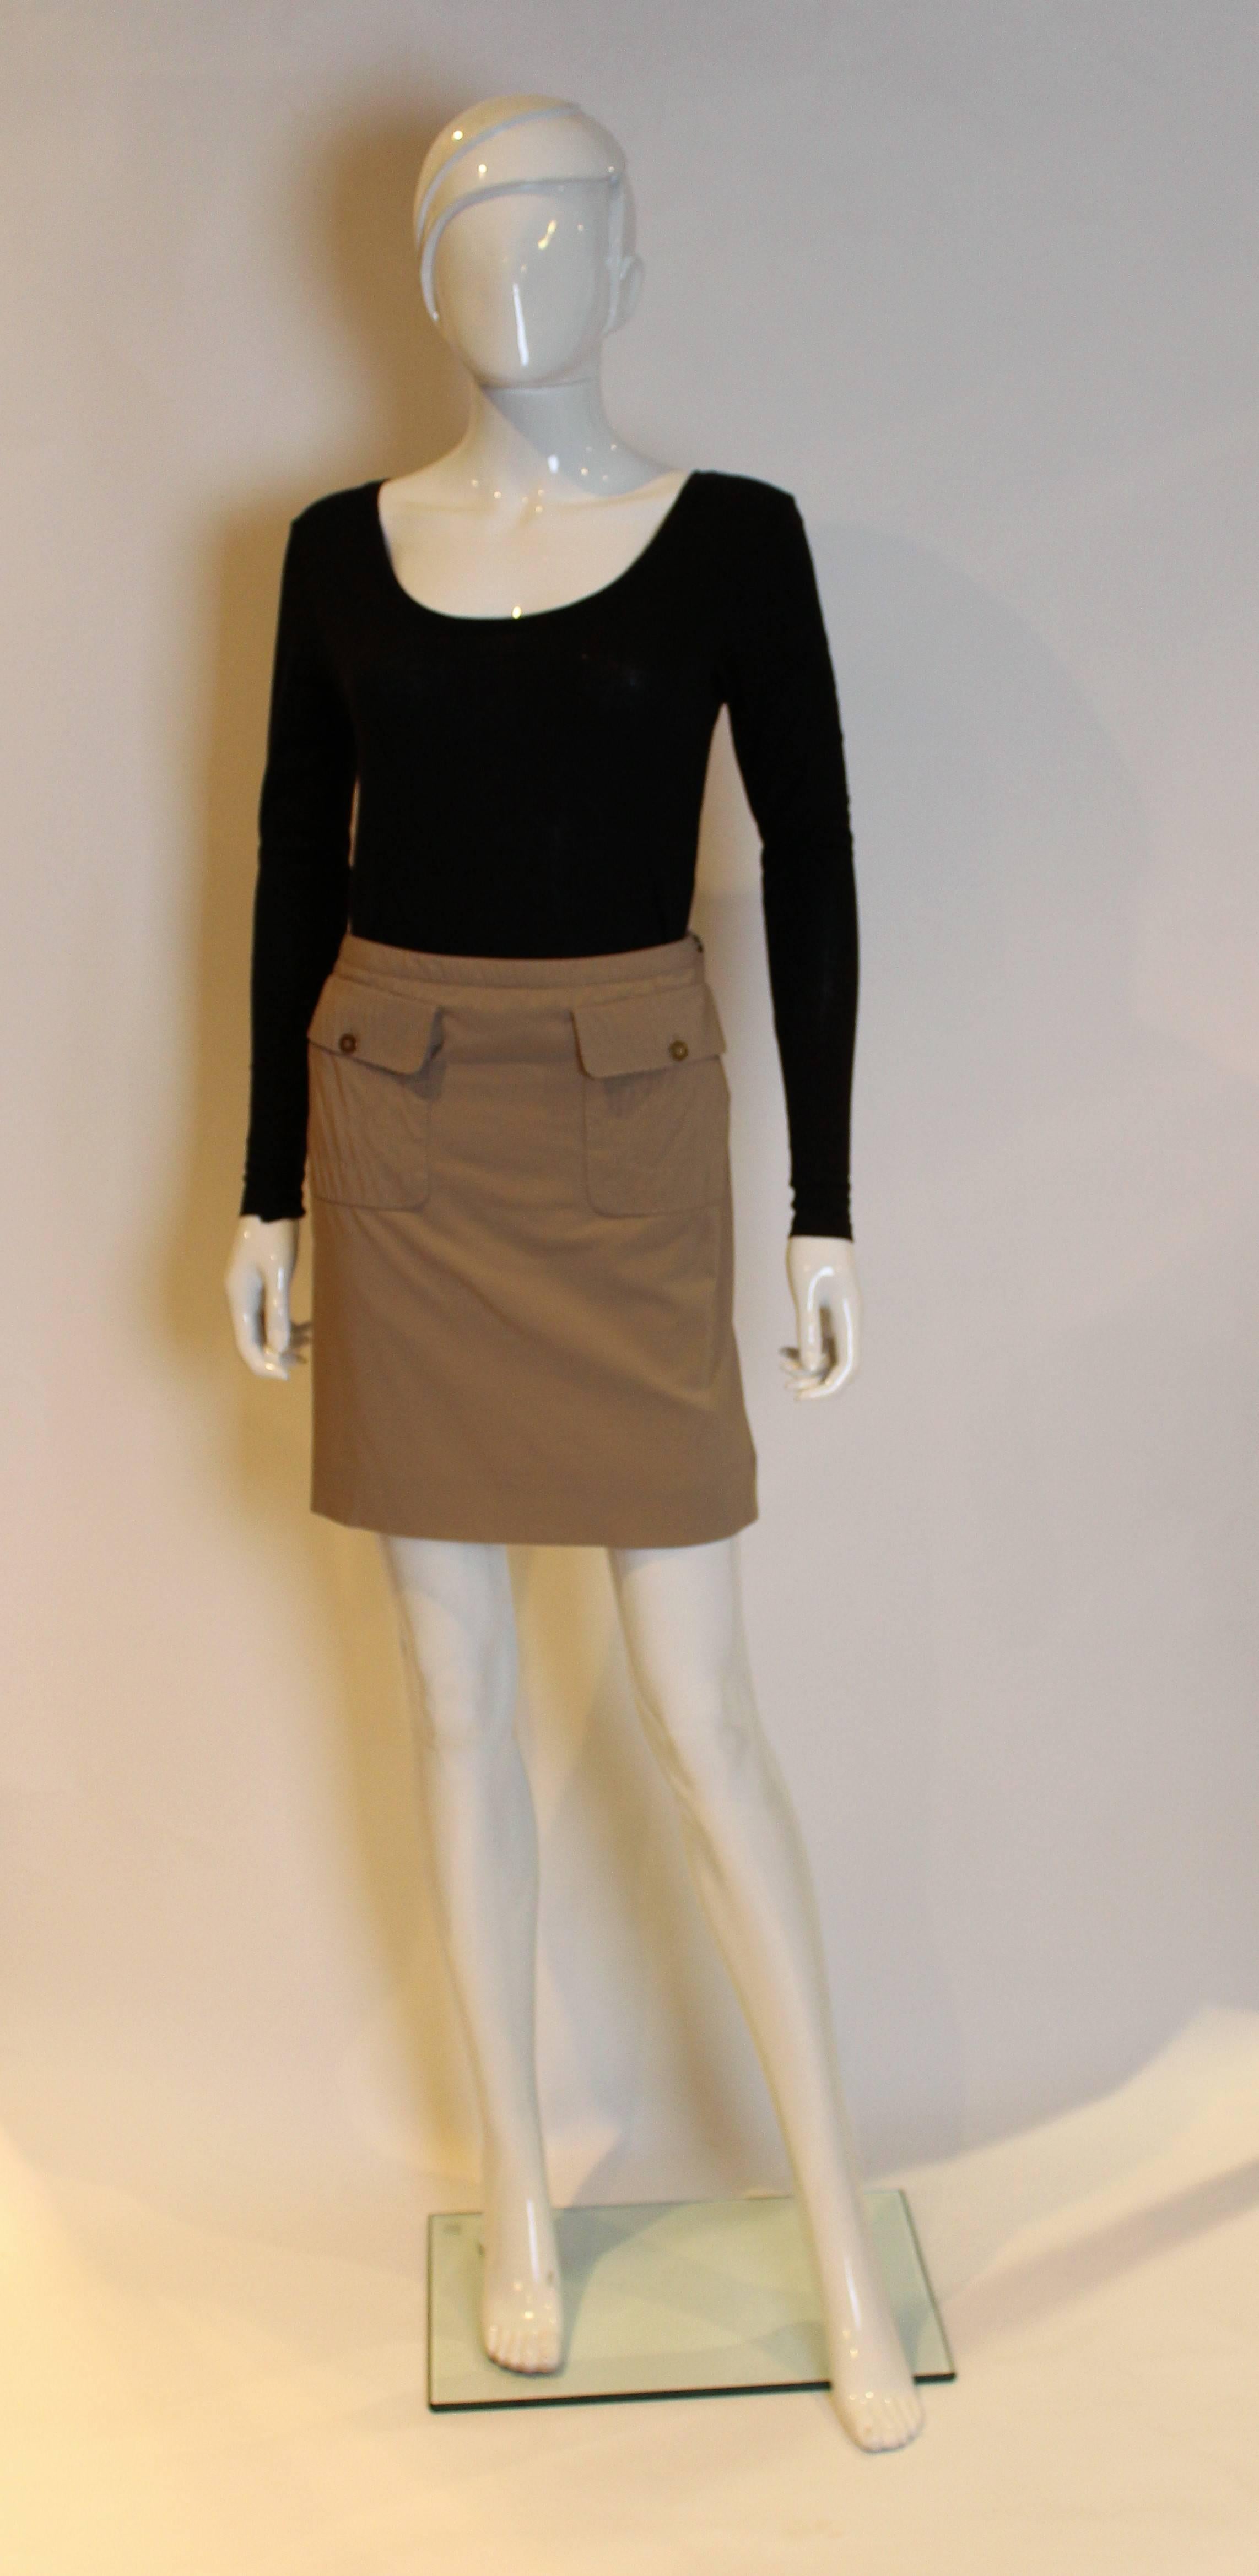 Une superbe jupe pour le printemps par la maison de design française Celine. En laine mélangée couleur café, cette jupe est dotée d'une fermeture éclair latérale et de deux grandes poches à l'avant.
